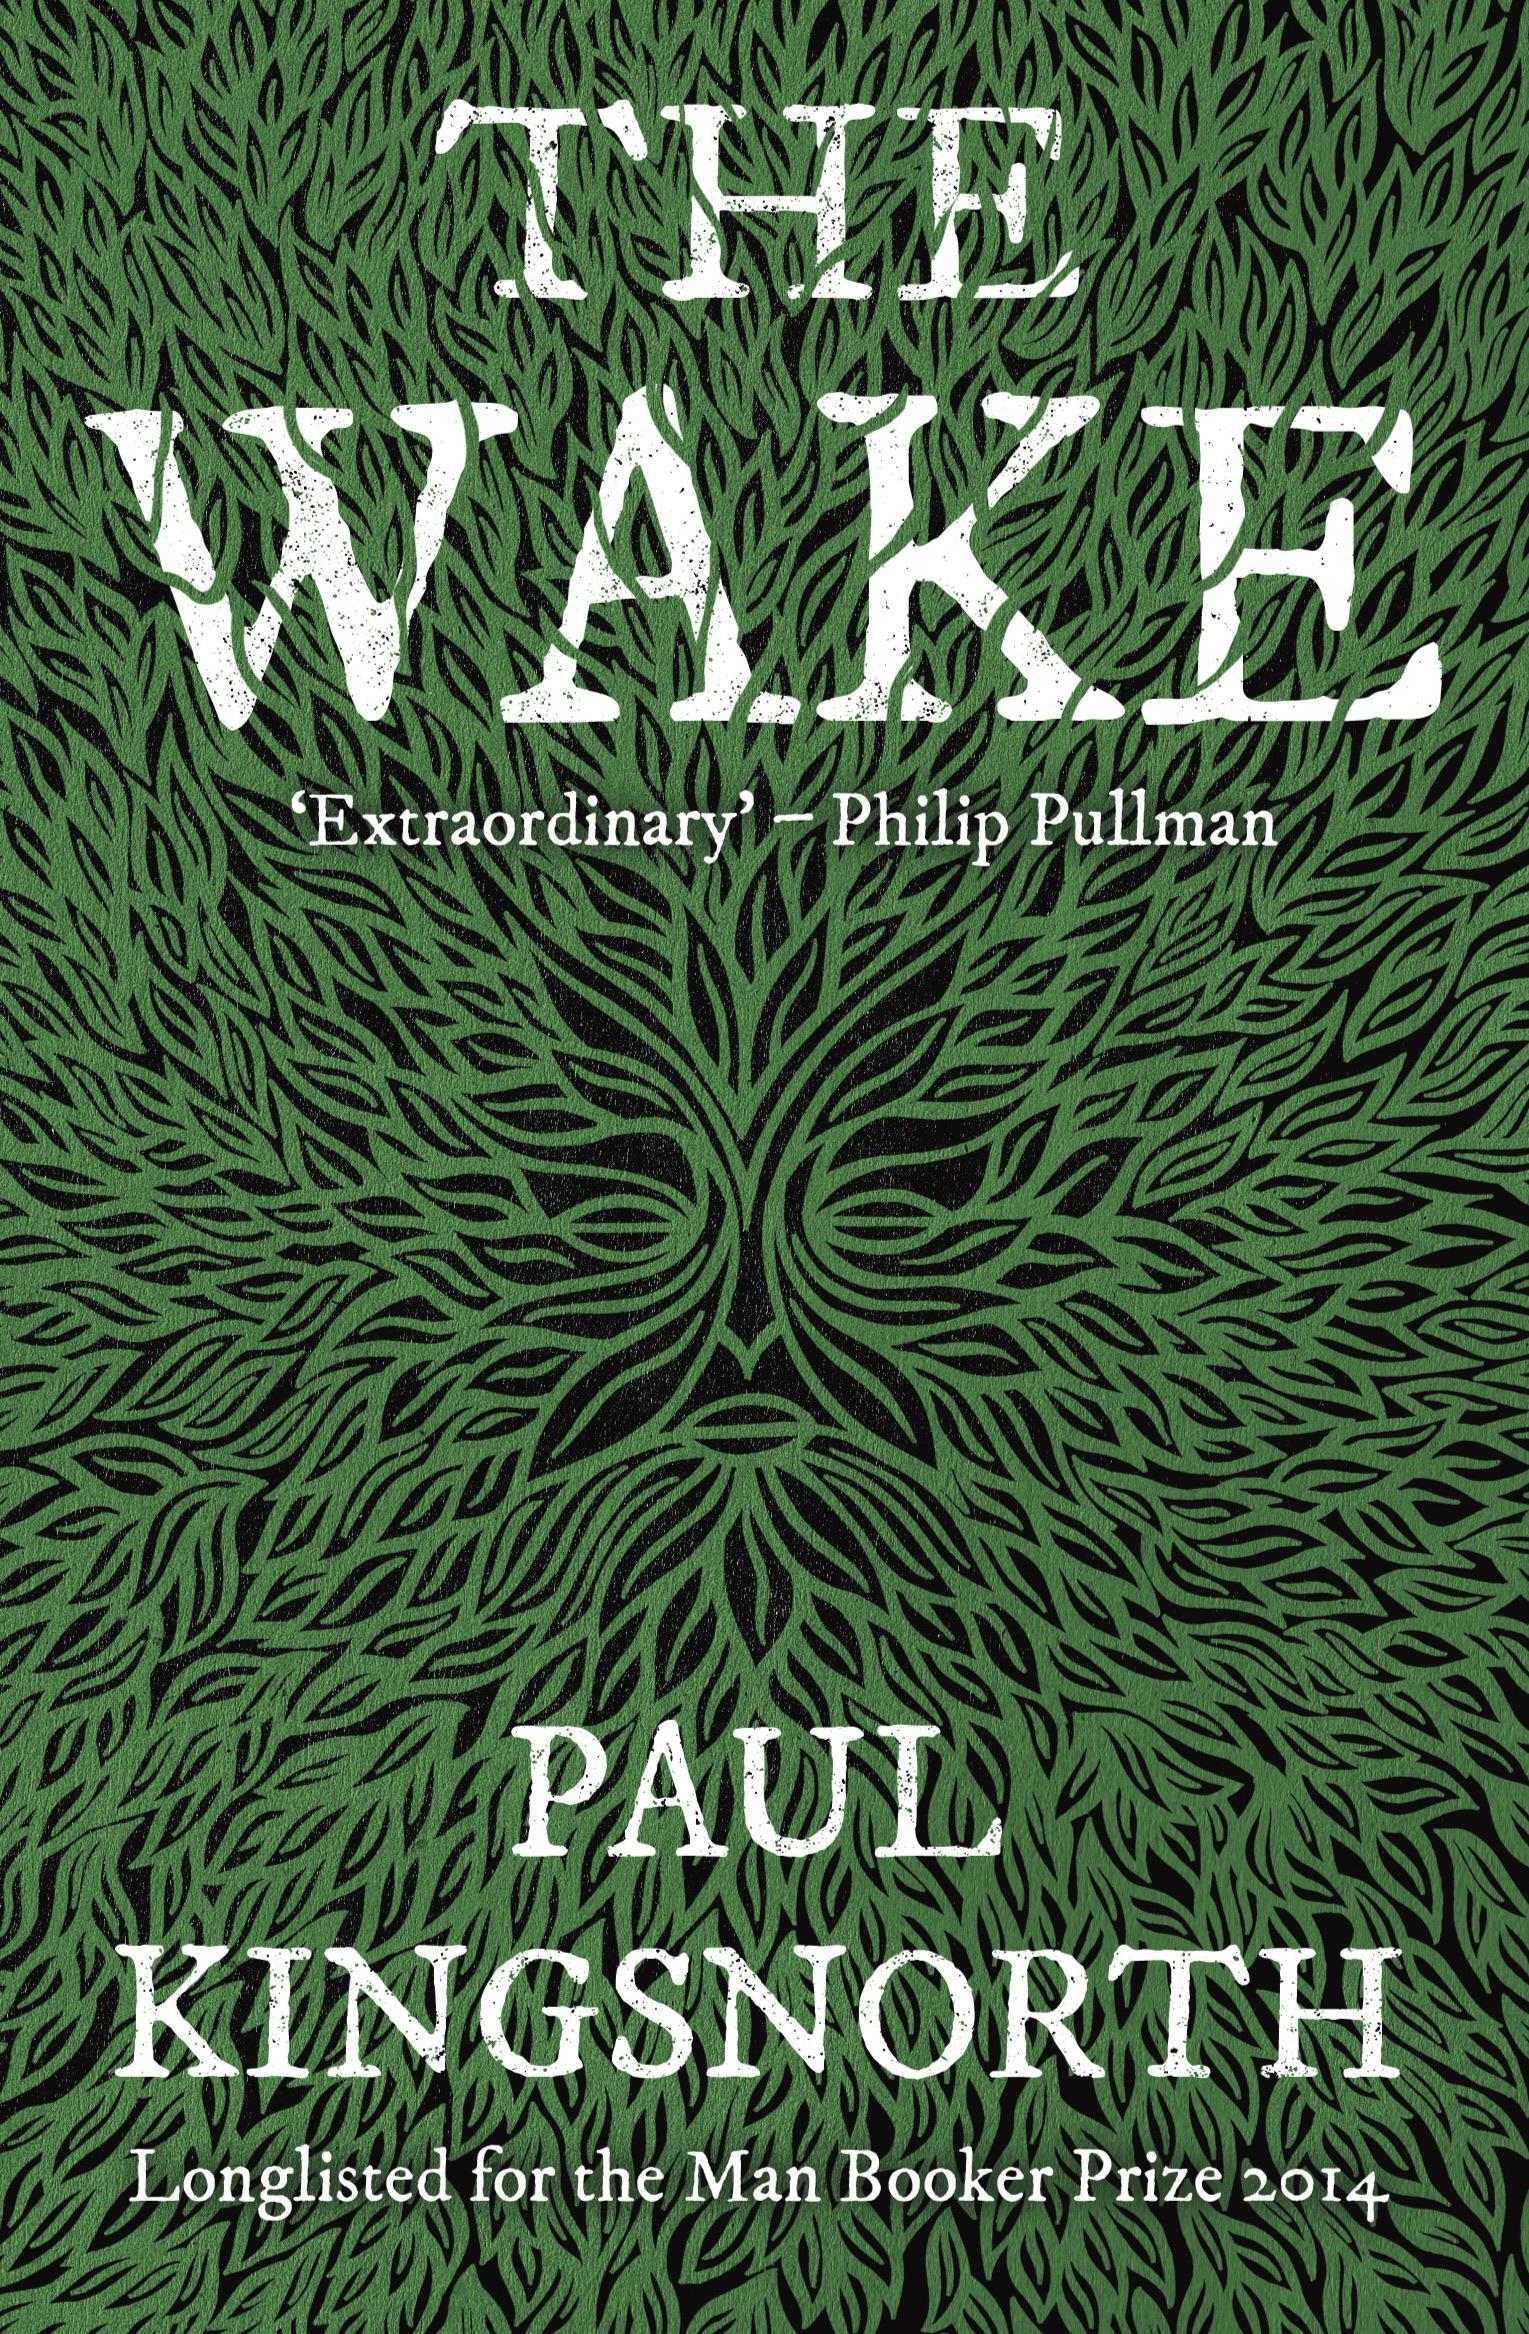 Wake - Paul Kingsnorth